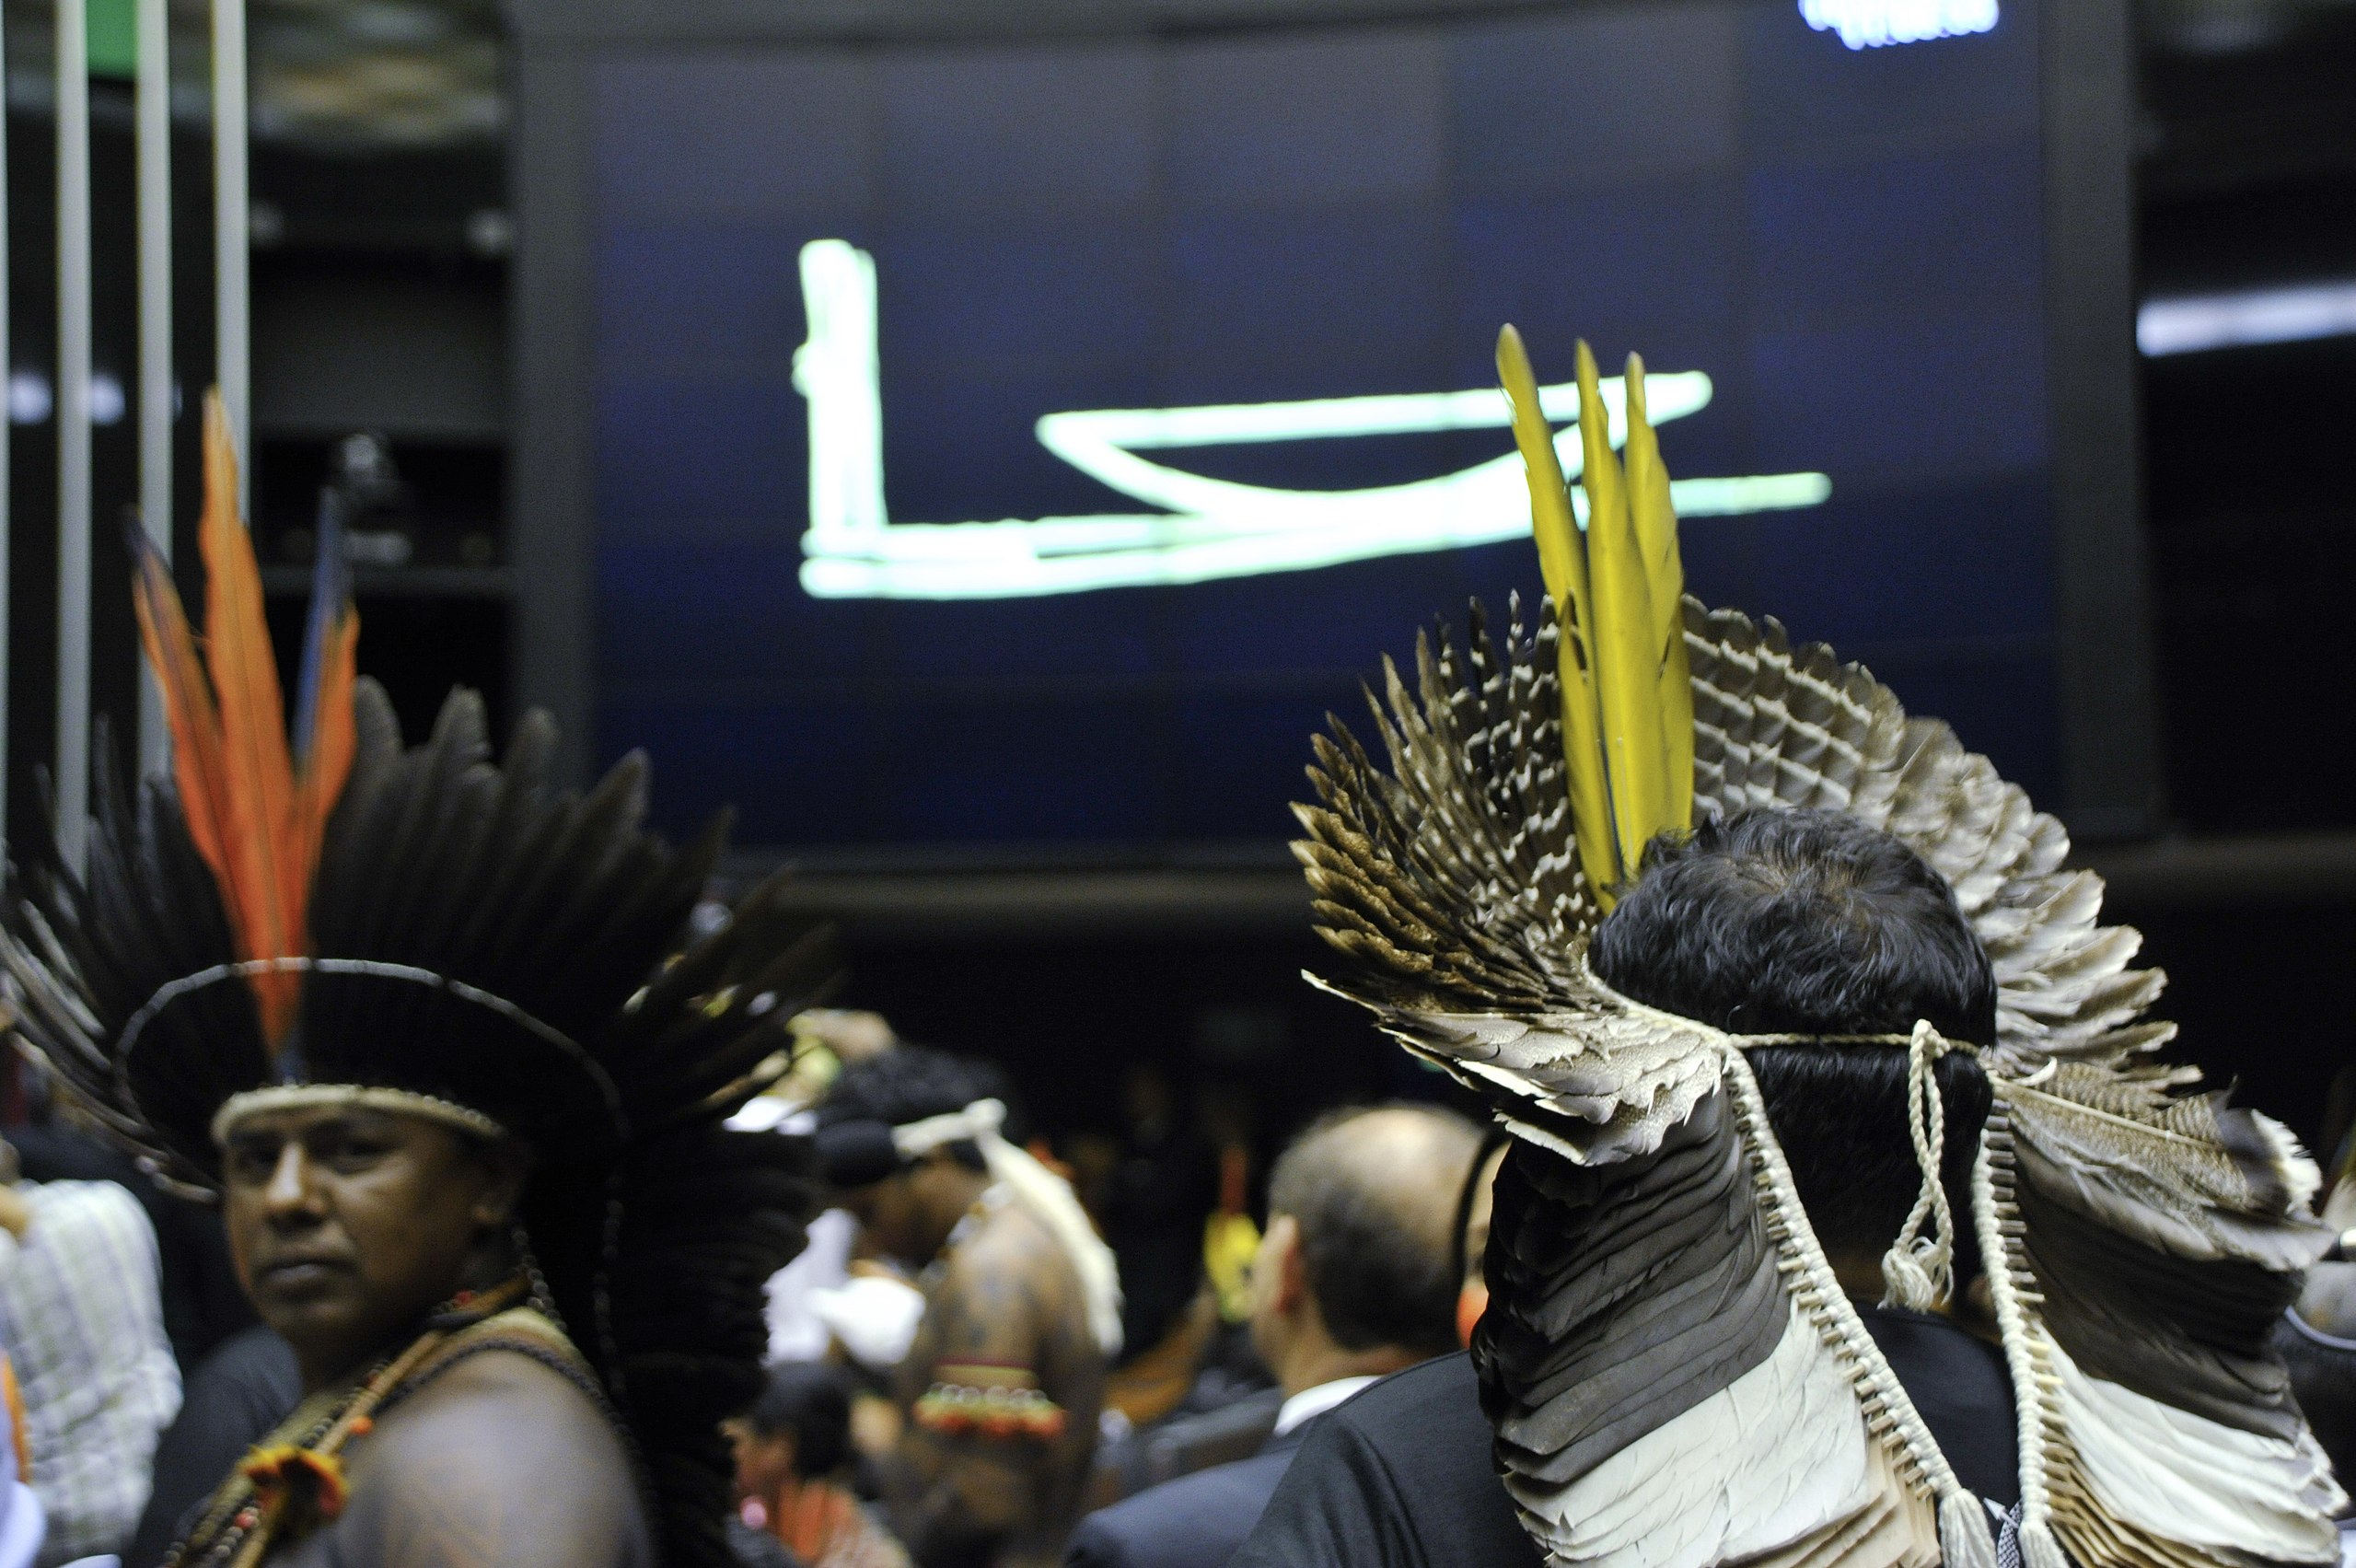 PL490: la legge controversa che minaccia i diritti delle popolazioni indigene in Brasile